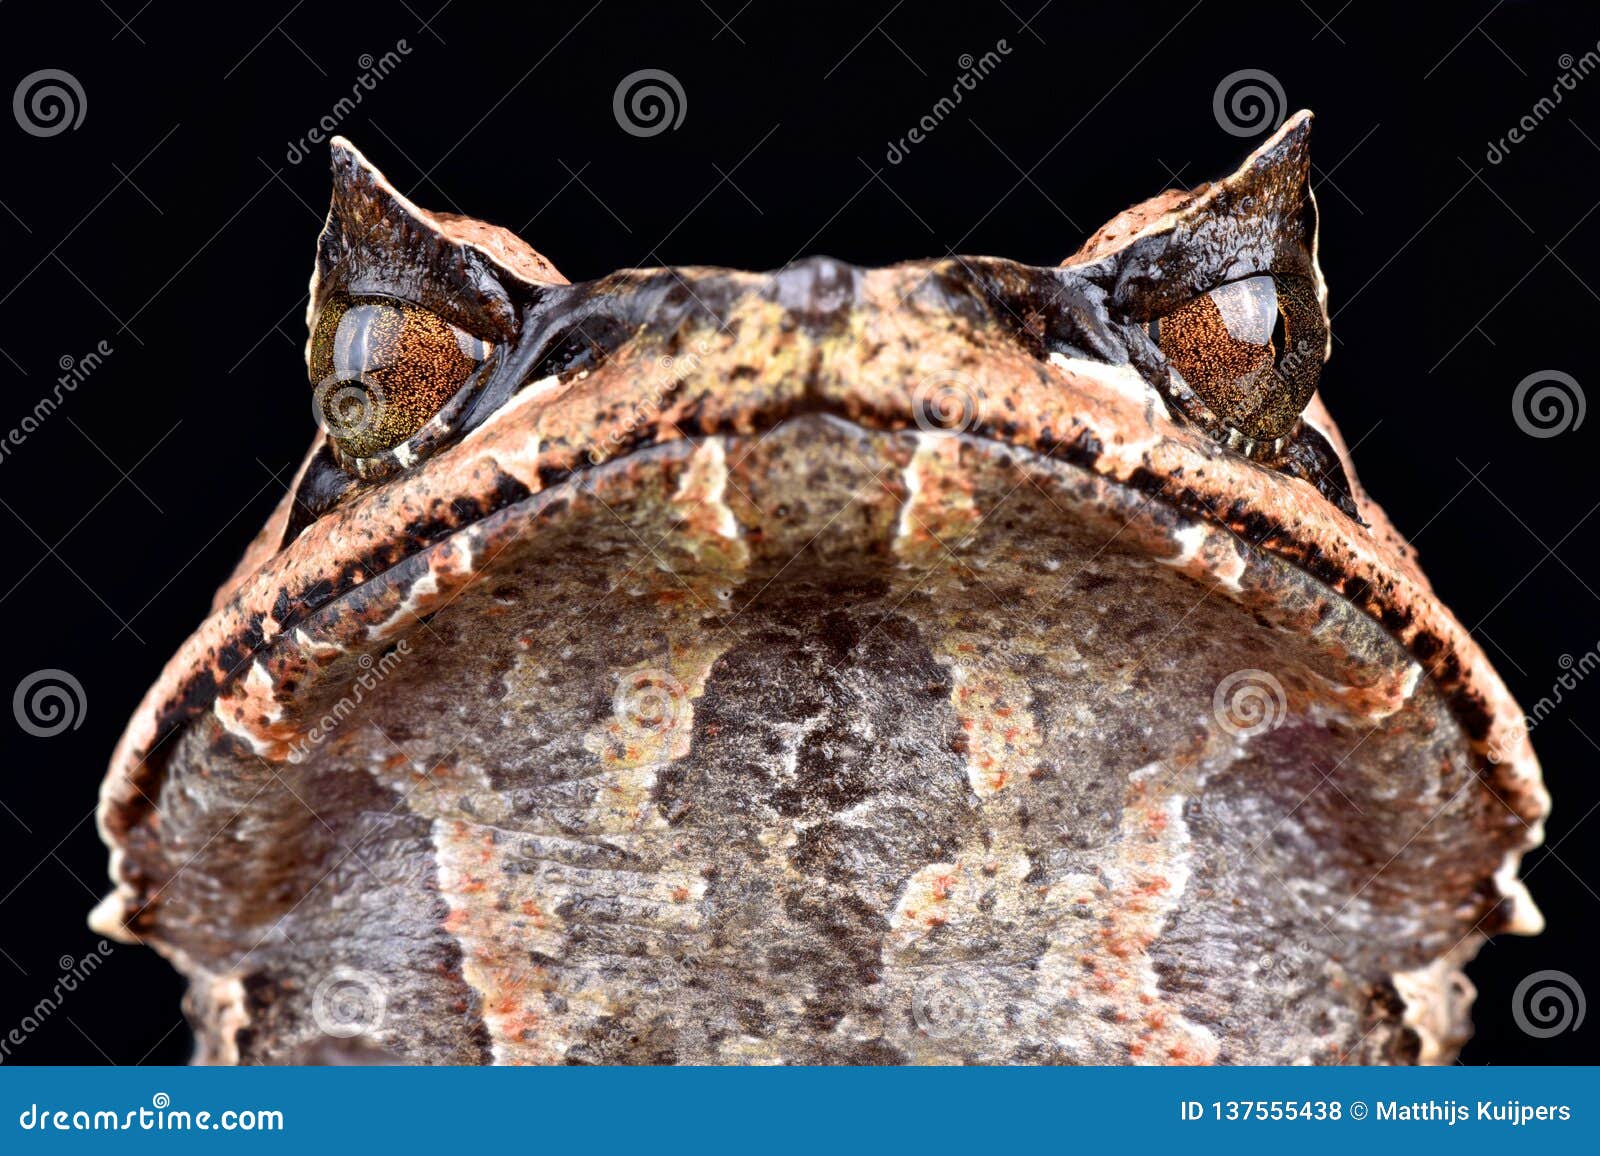 Asian horned frog